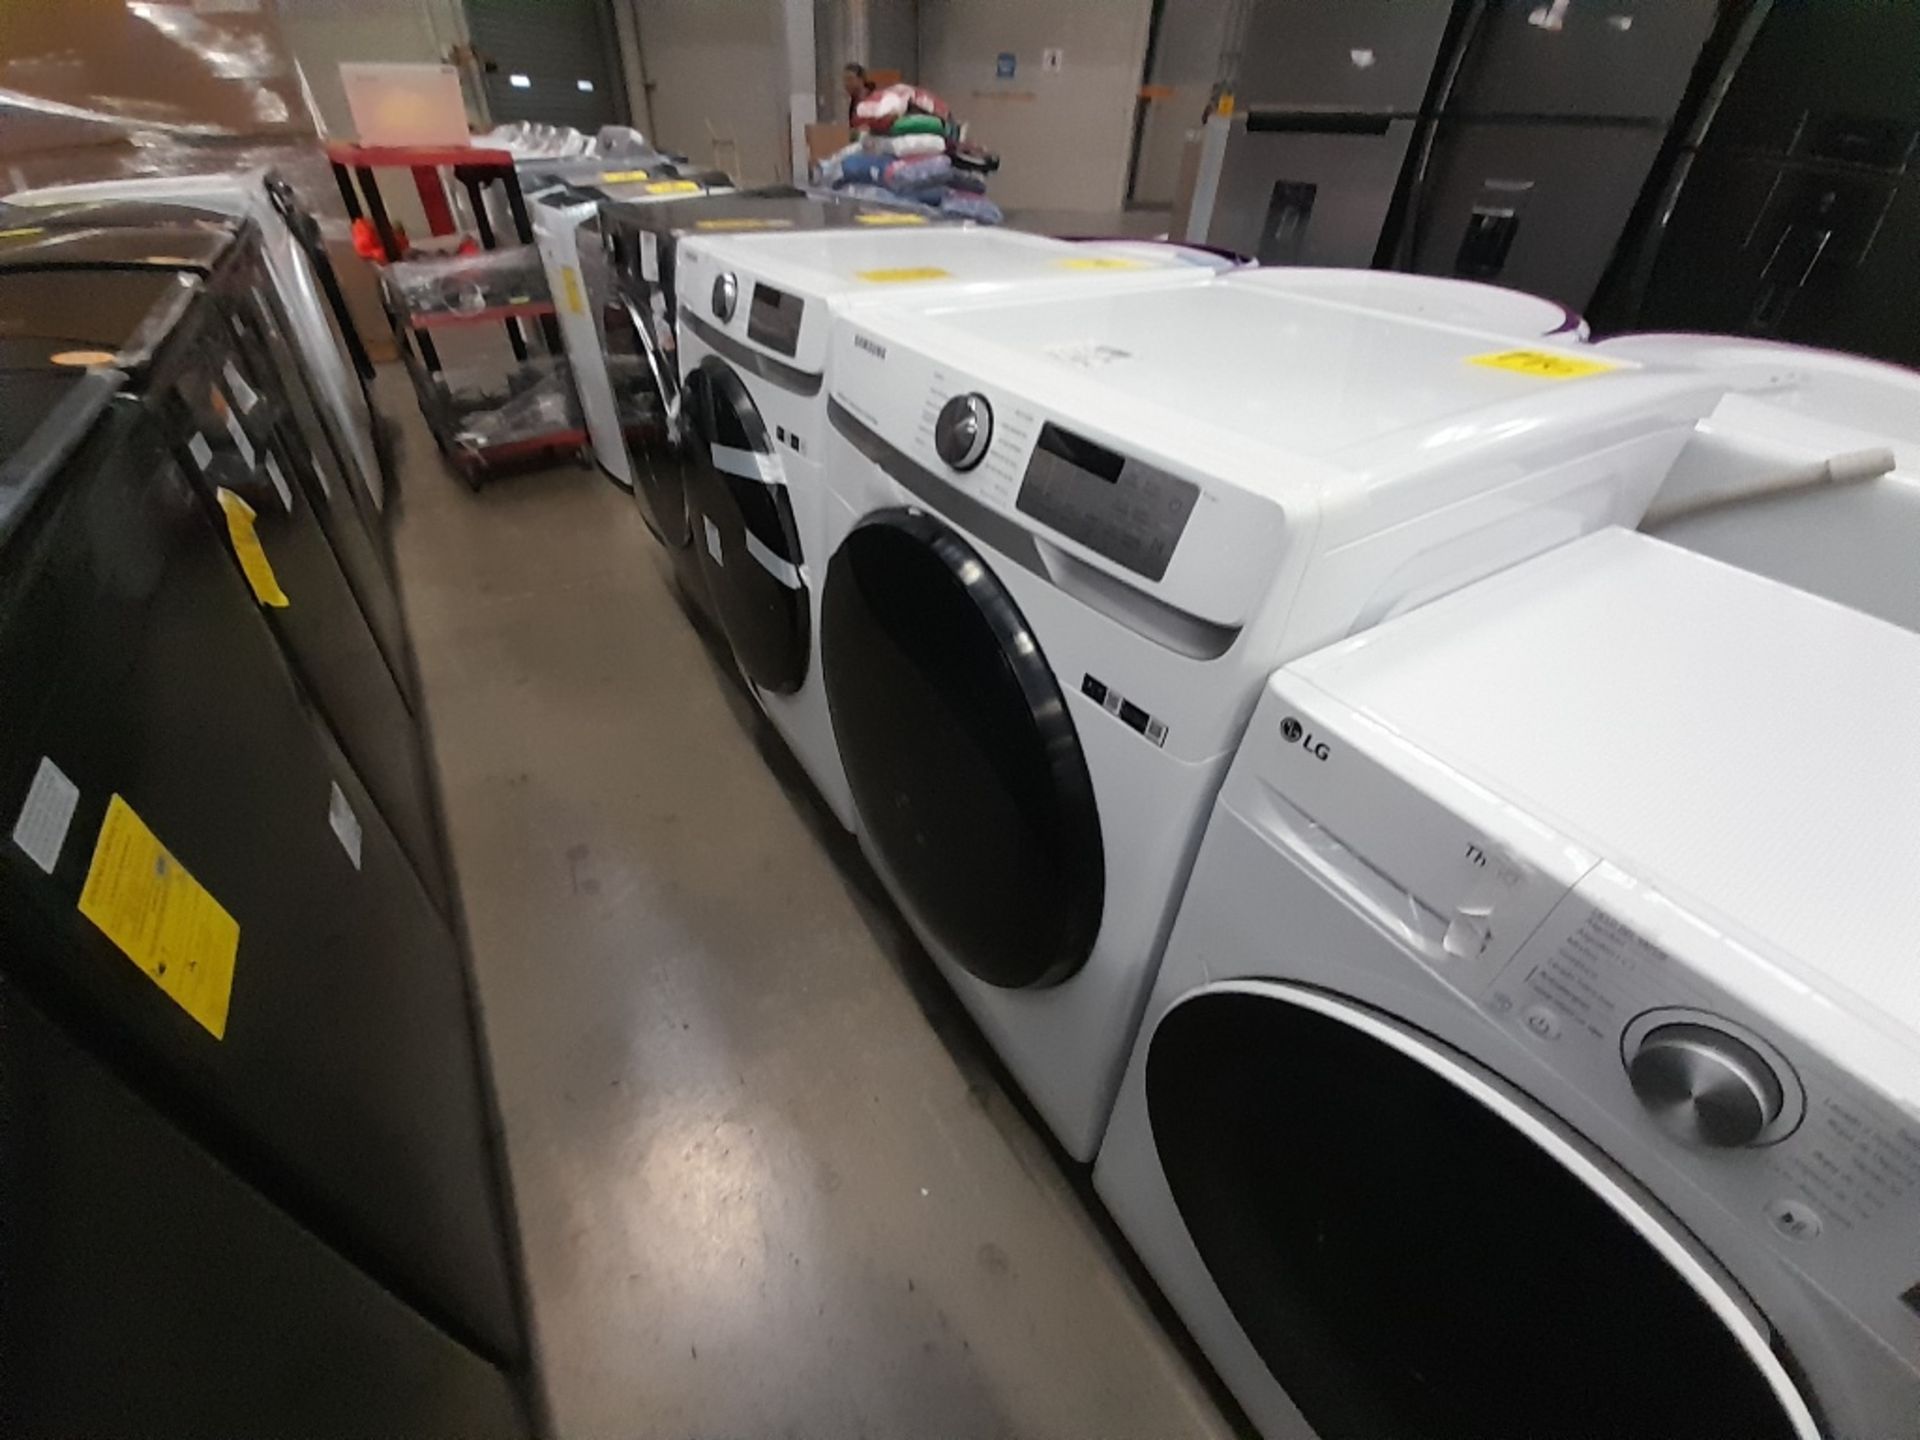 Lote de 1 lavadora y 1 Secadora contiene: 1 lavadora de 22 KG, Marca SAMSUNG, Modelo WF22R6270AV, S - Image 2 of 8